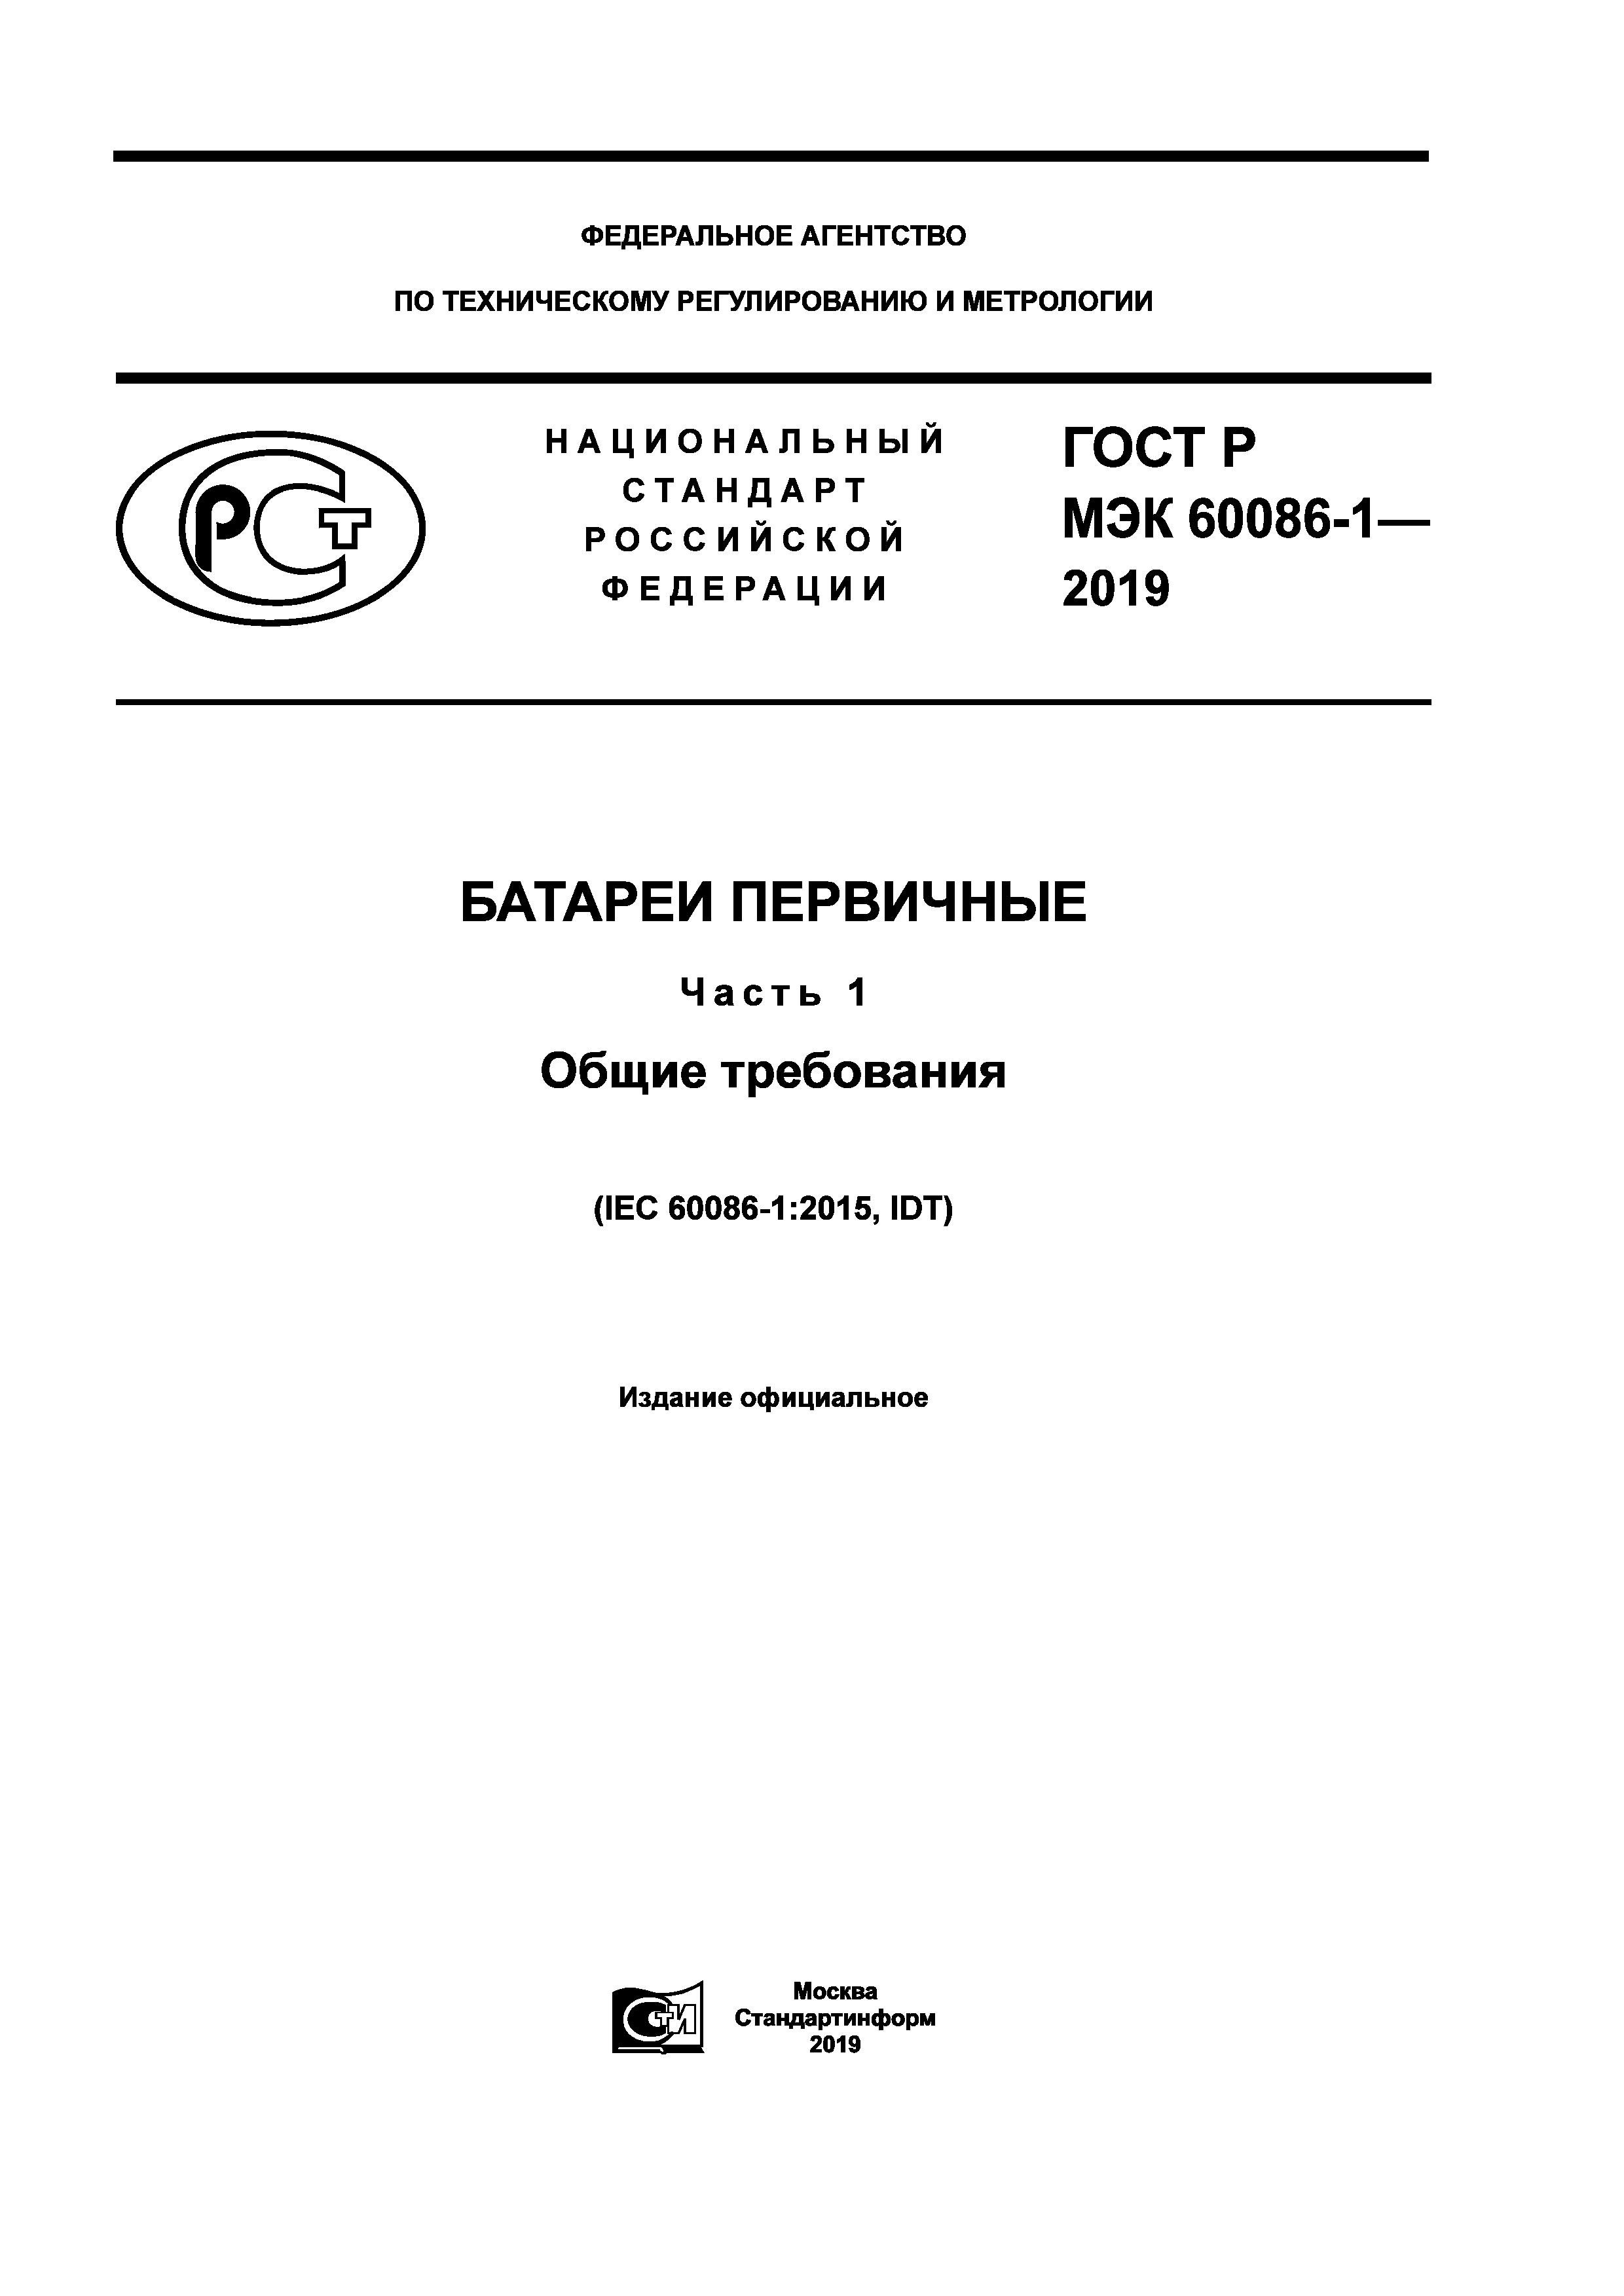 ГОСТ Р МЭК 60086-1-2019